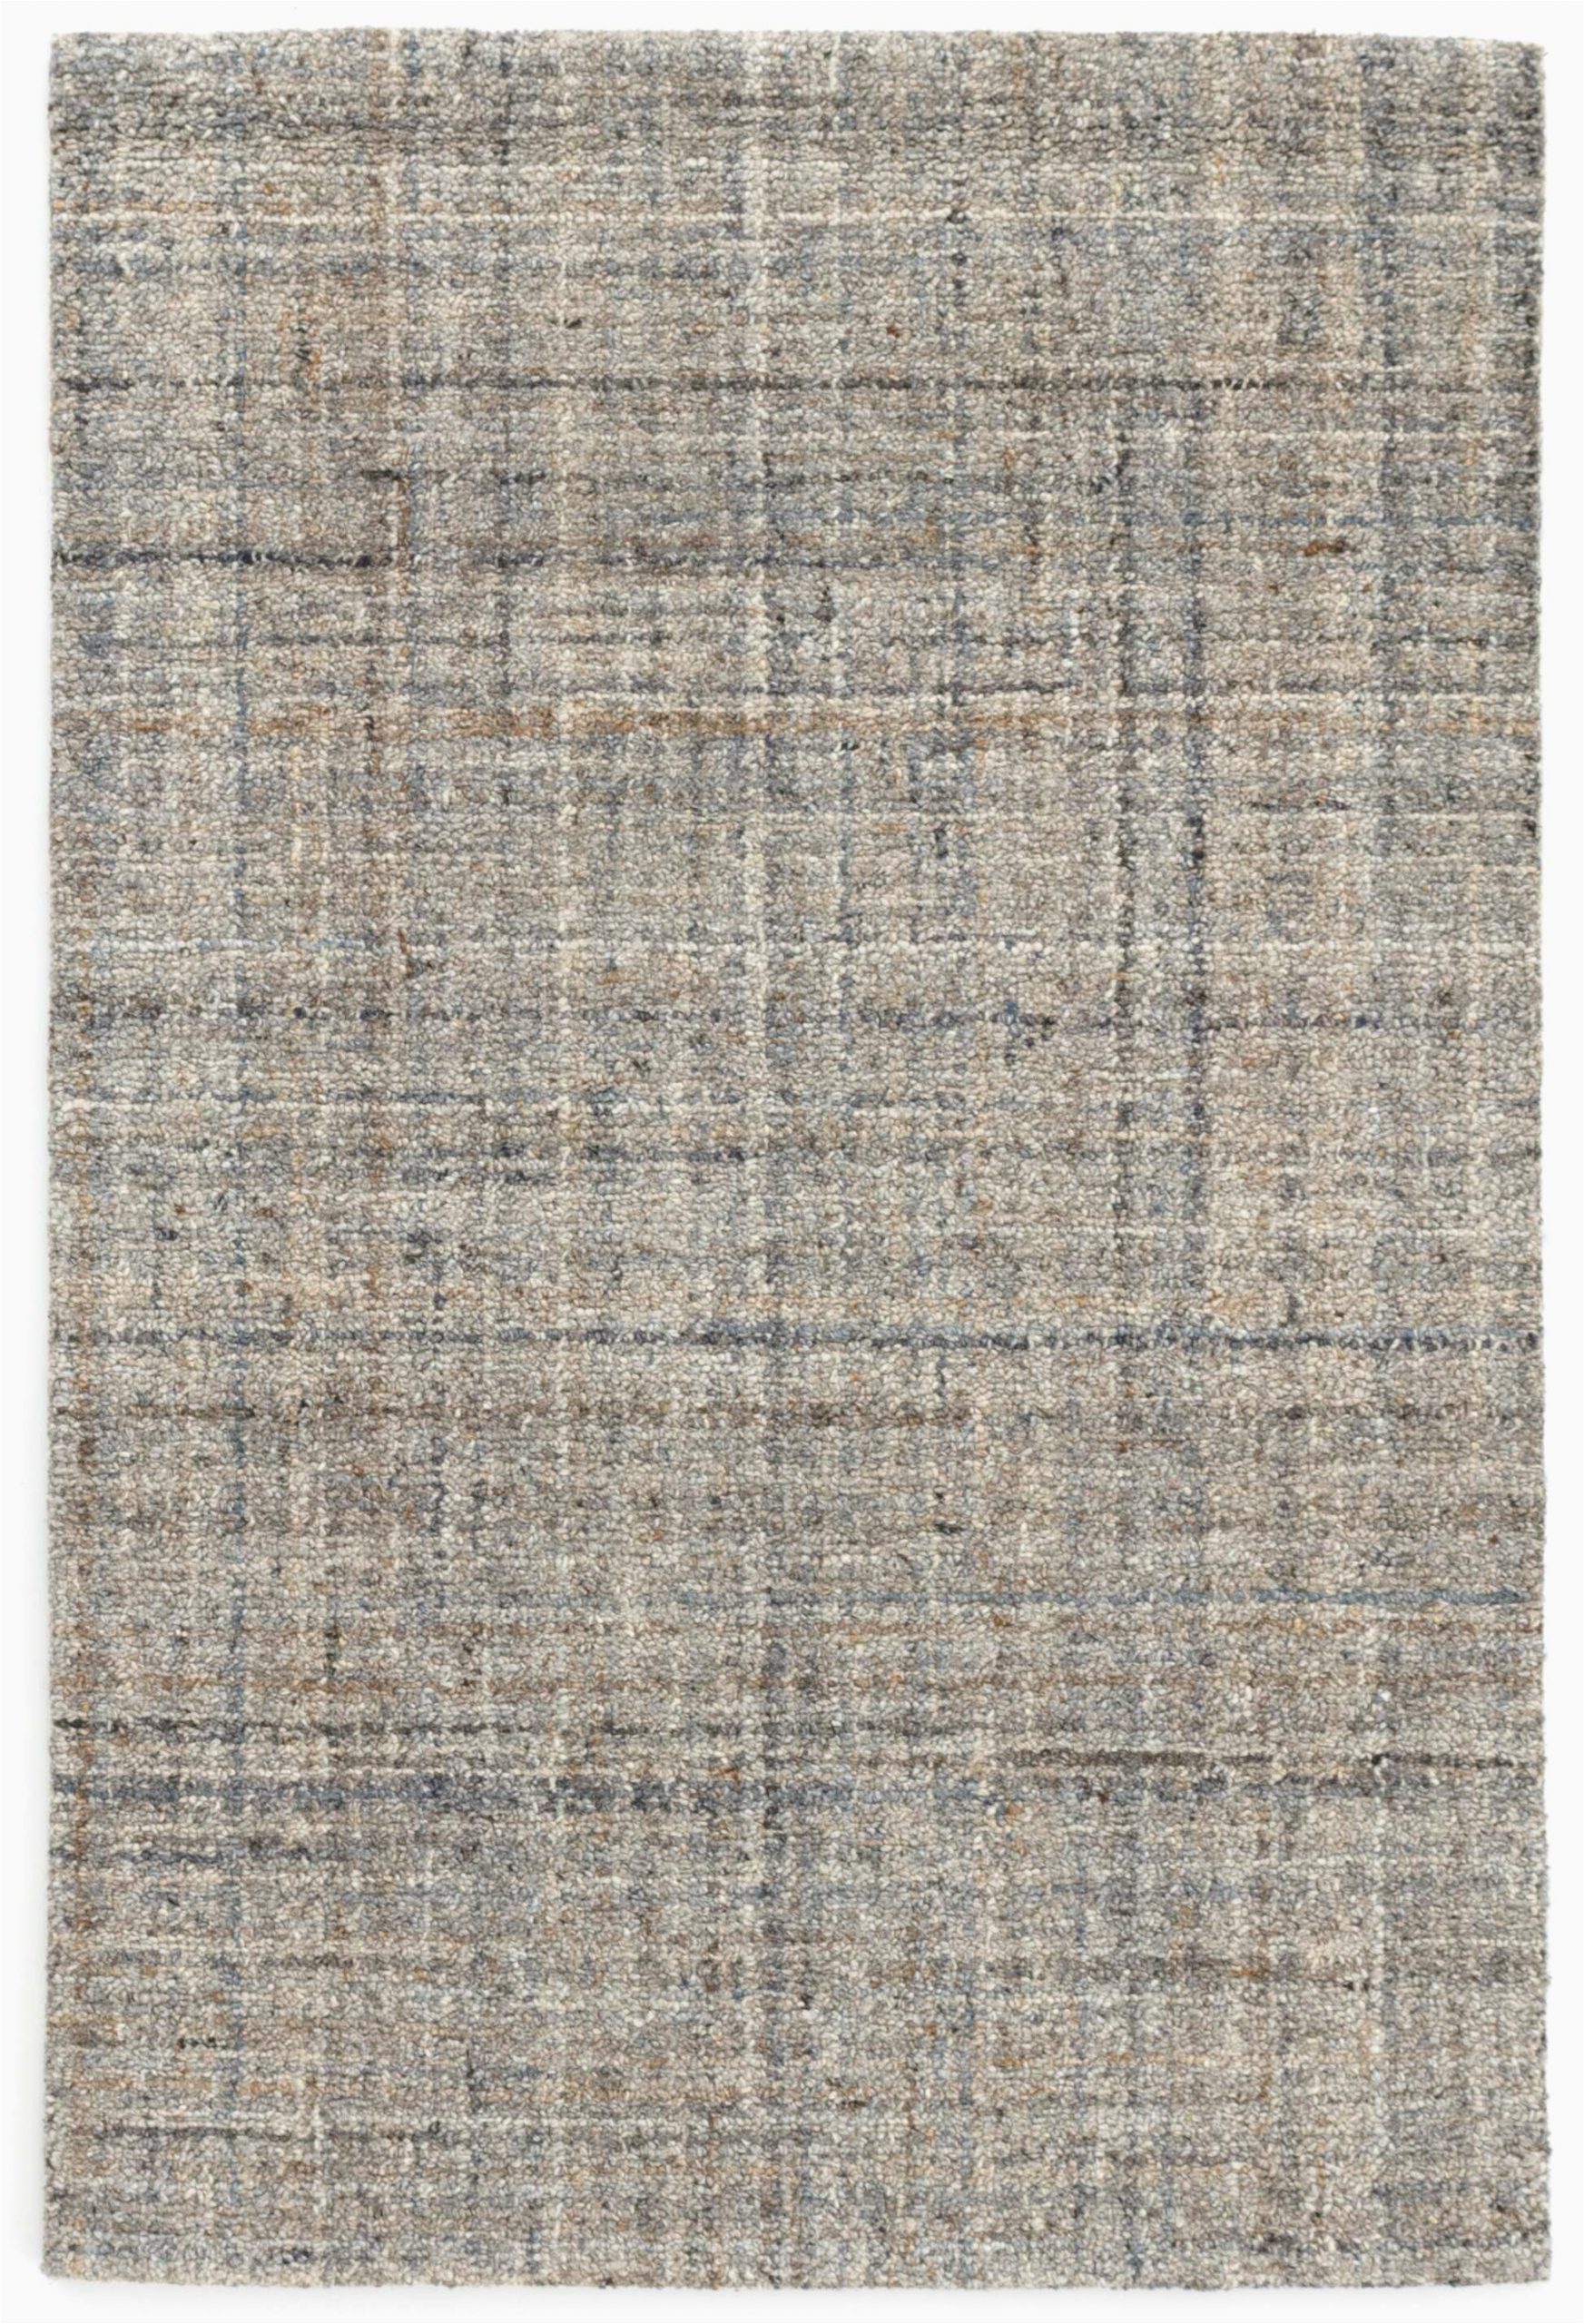 harris micro hand hooked wool grayblueblack area rug